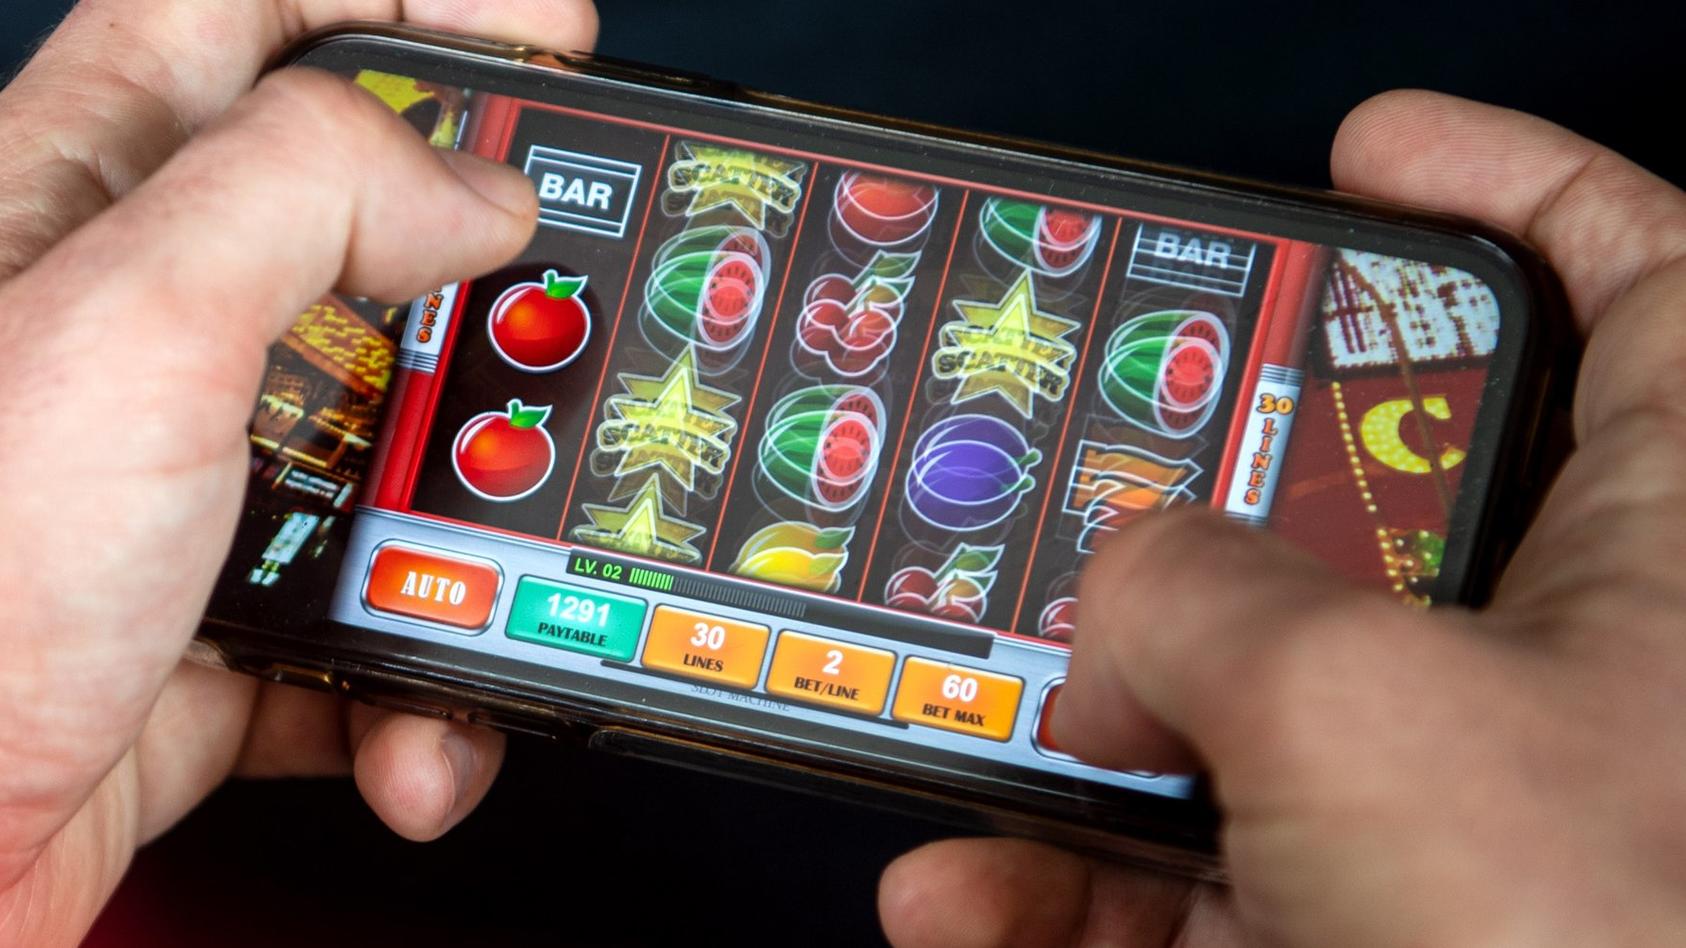 23.06.2021, Bremen: ILLUSTRATION - Auf einem Smartphone wird ein Online-Spiel gespielt. Mit dem neuen Glücksspielstaatsvertrag der am 1. Juli in Kraft tritt, werden bisher verbotene virtuelle Automatenspiele im Internet sowie Online-Casinos mit Poker